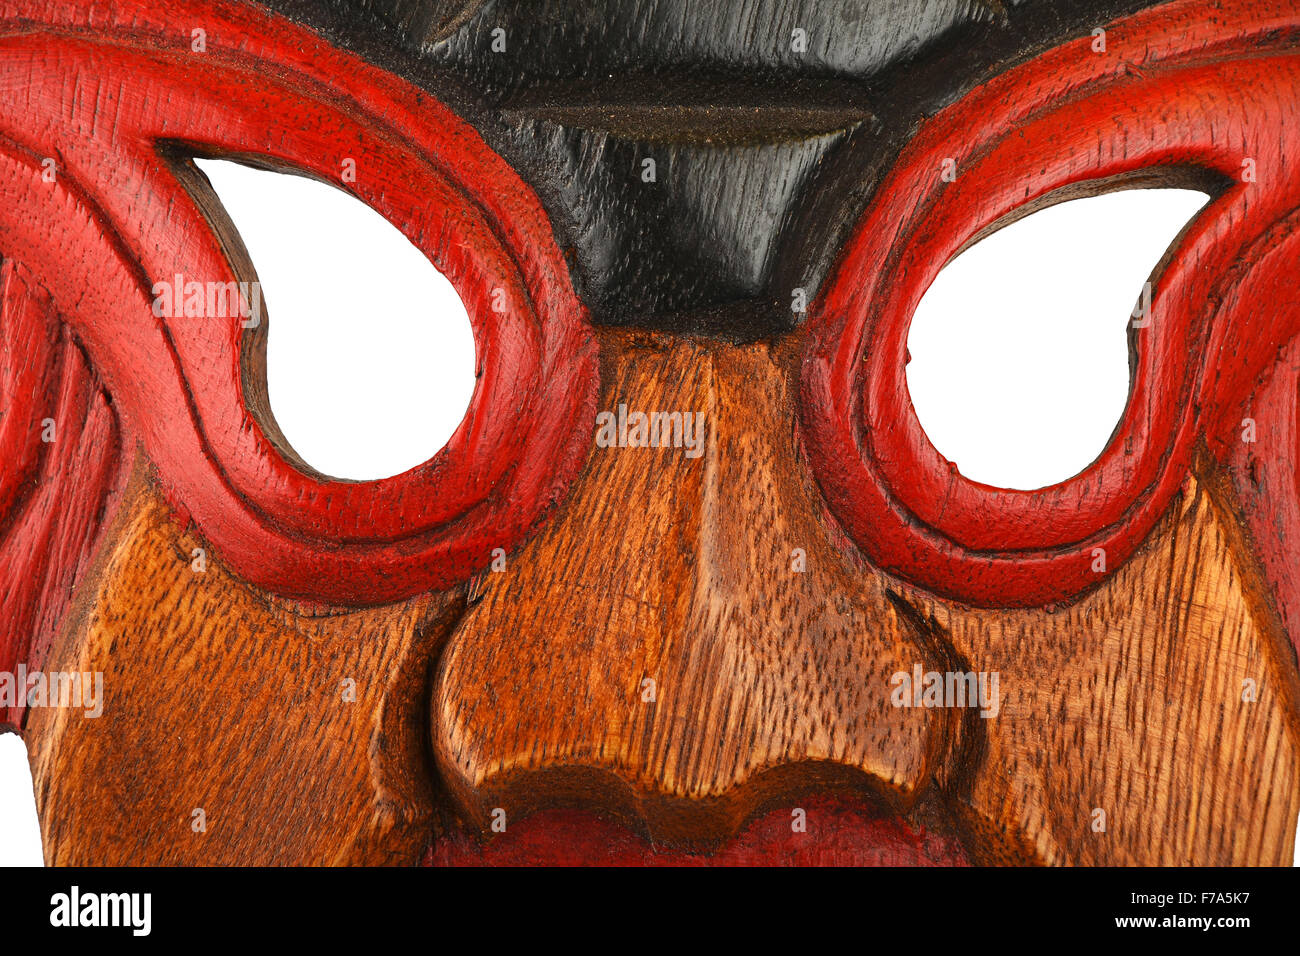 Masque en bois traditionnel asiatique avec visage de démon ou humain peint de rouge vif et bleu close up Banque D'Images